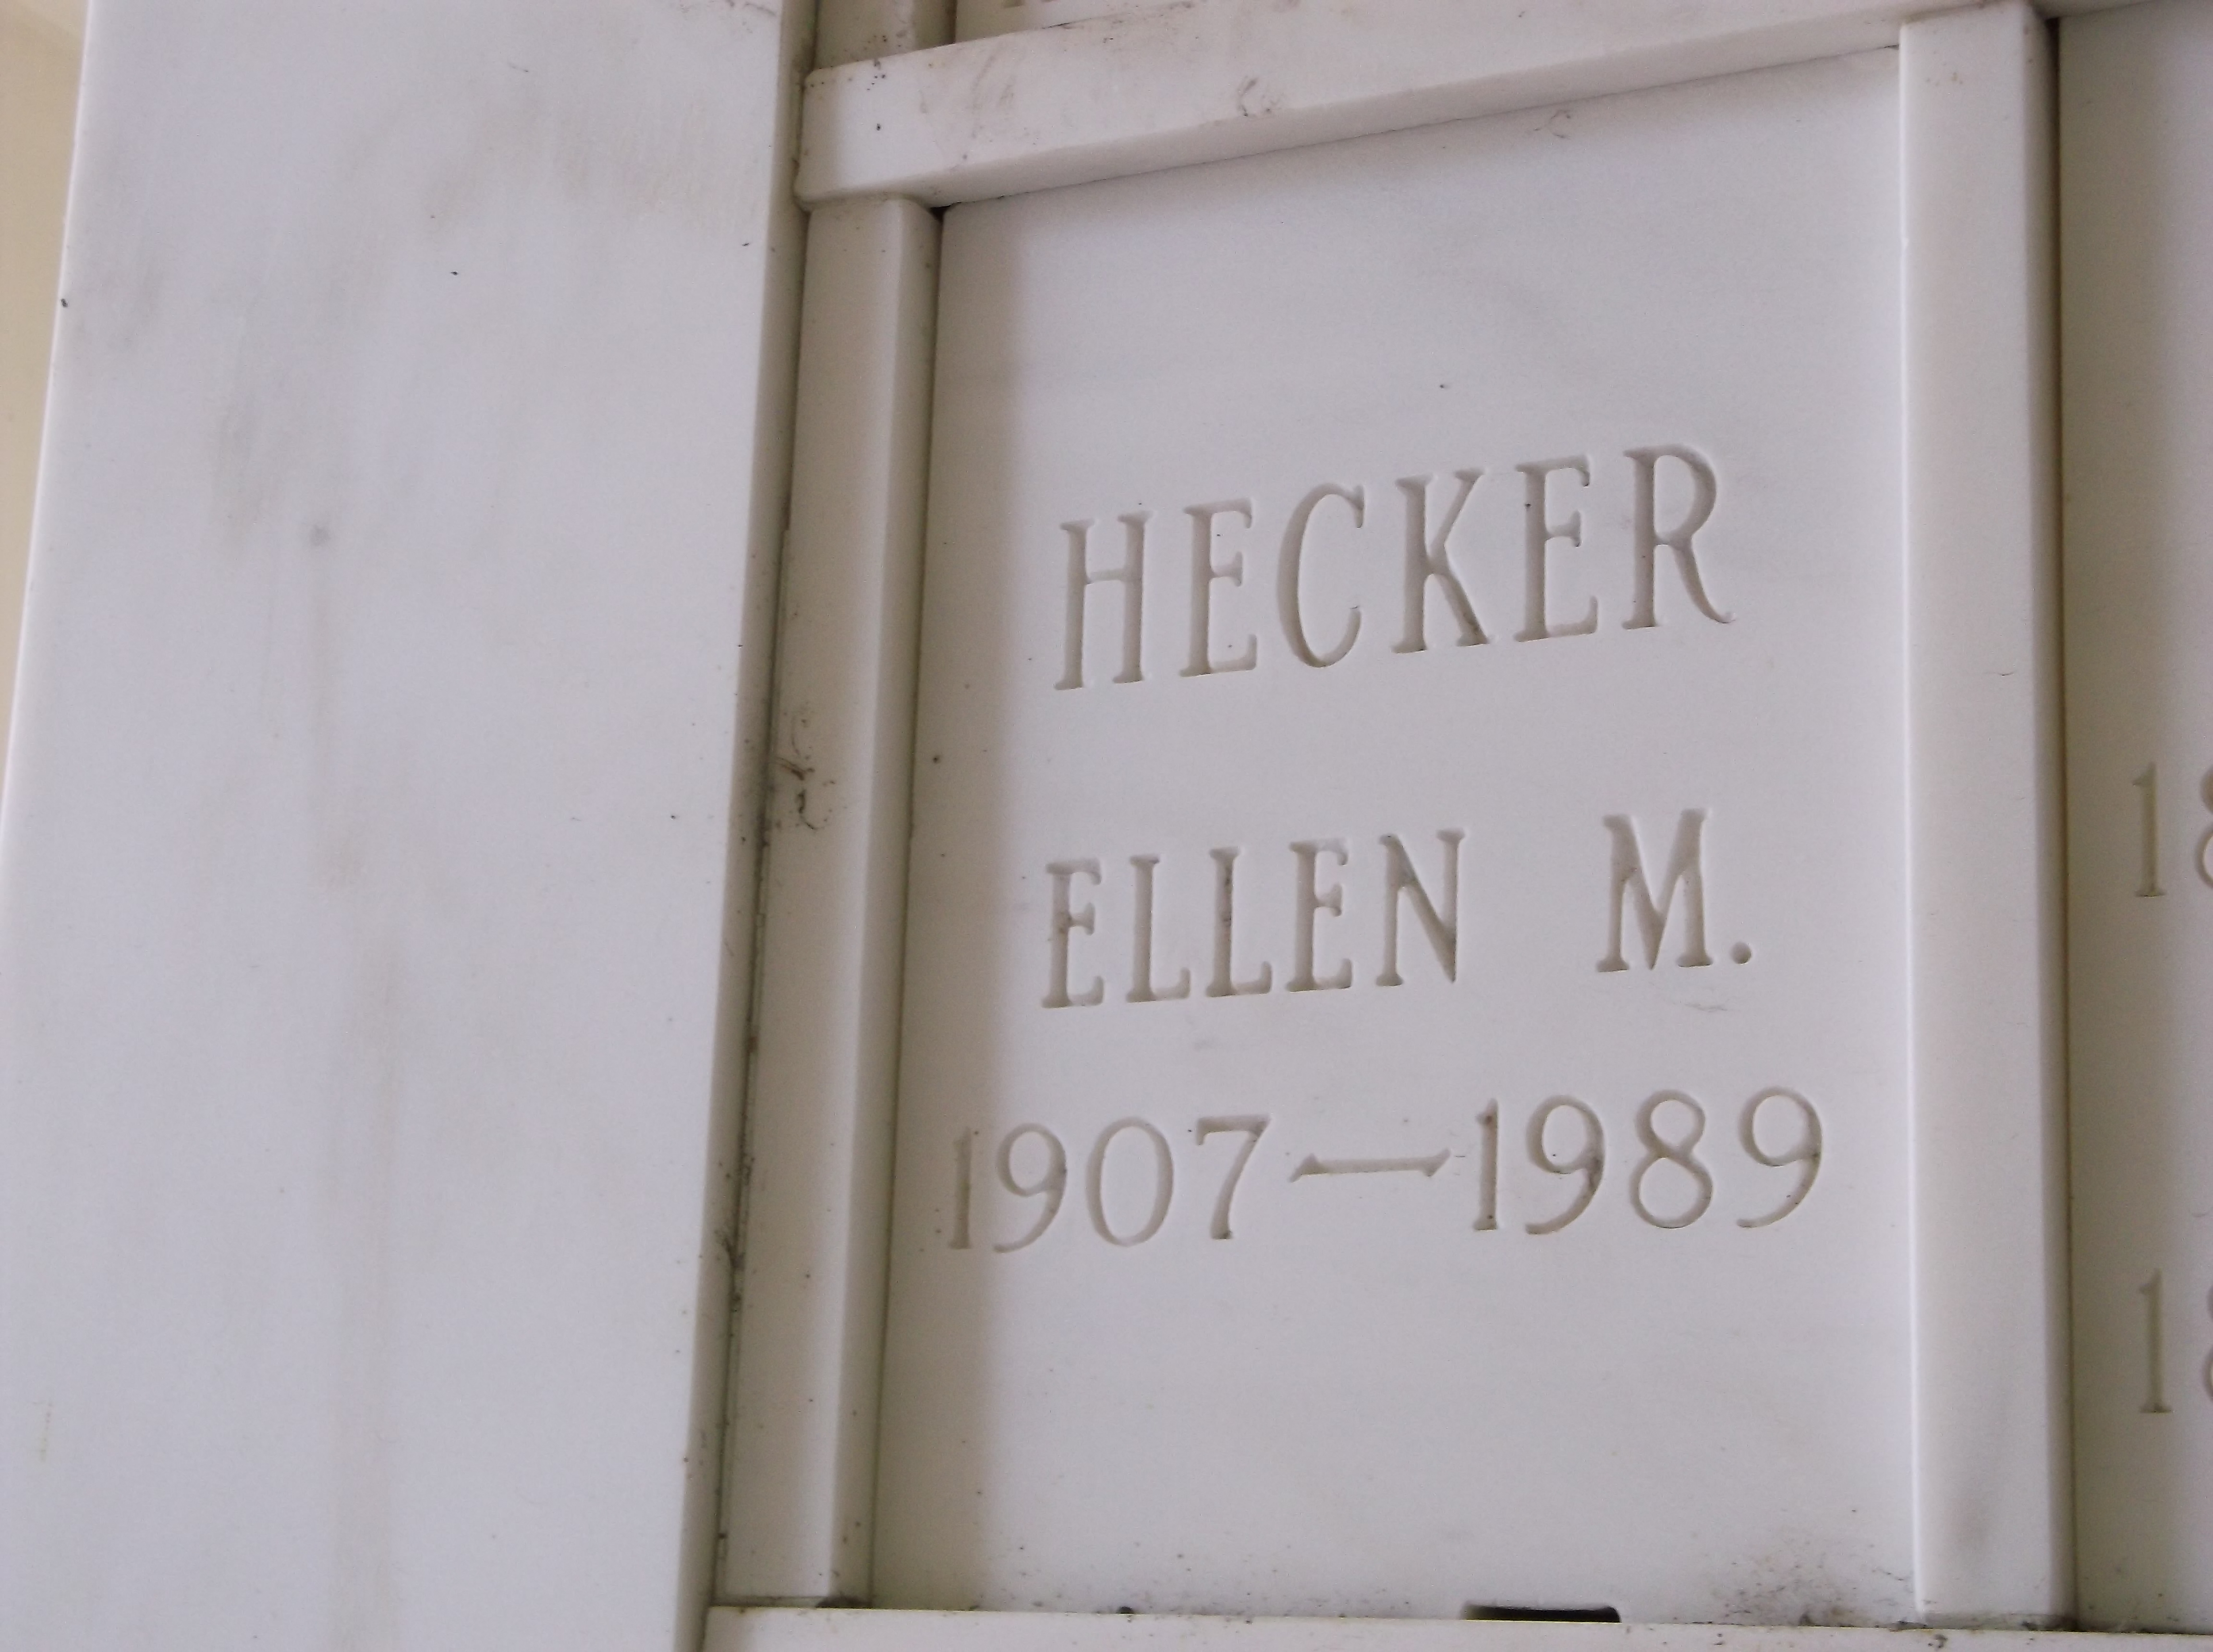 Ellen M Hecker